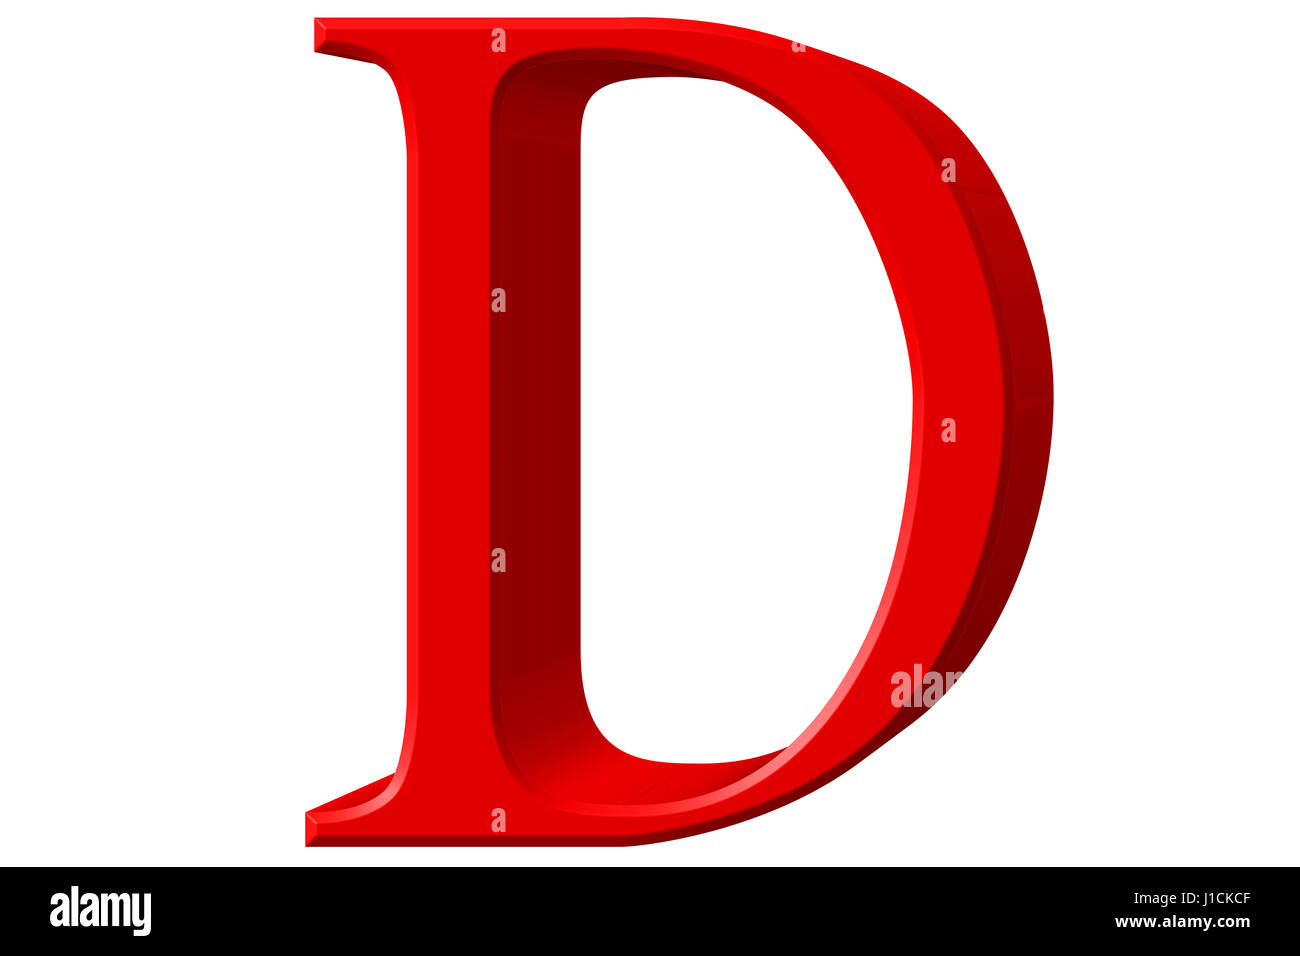 Letter D Big Red Dot Letters Stock Illustration 1588089118